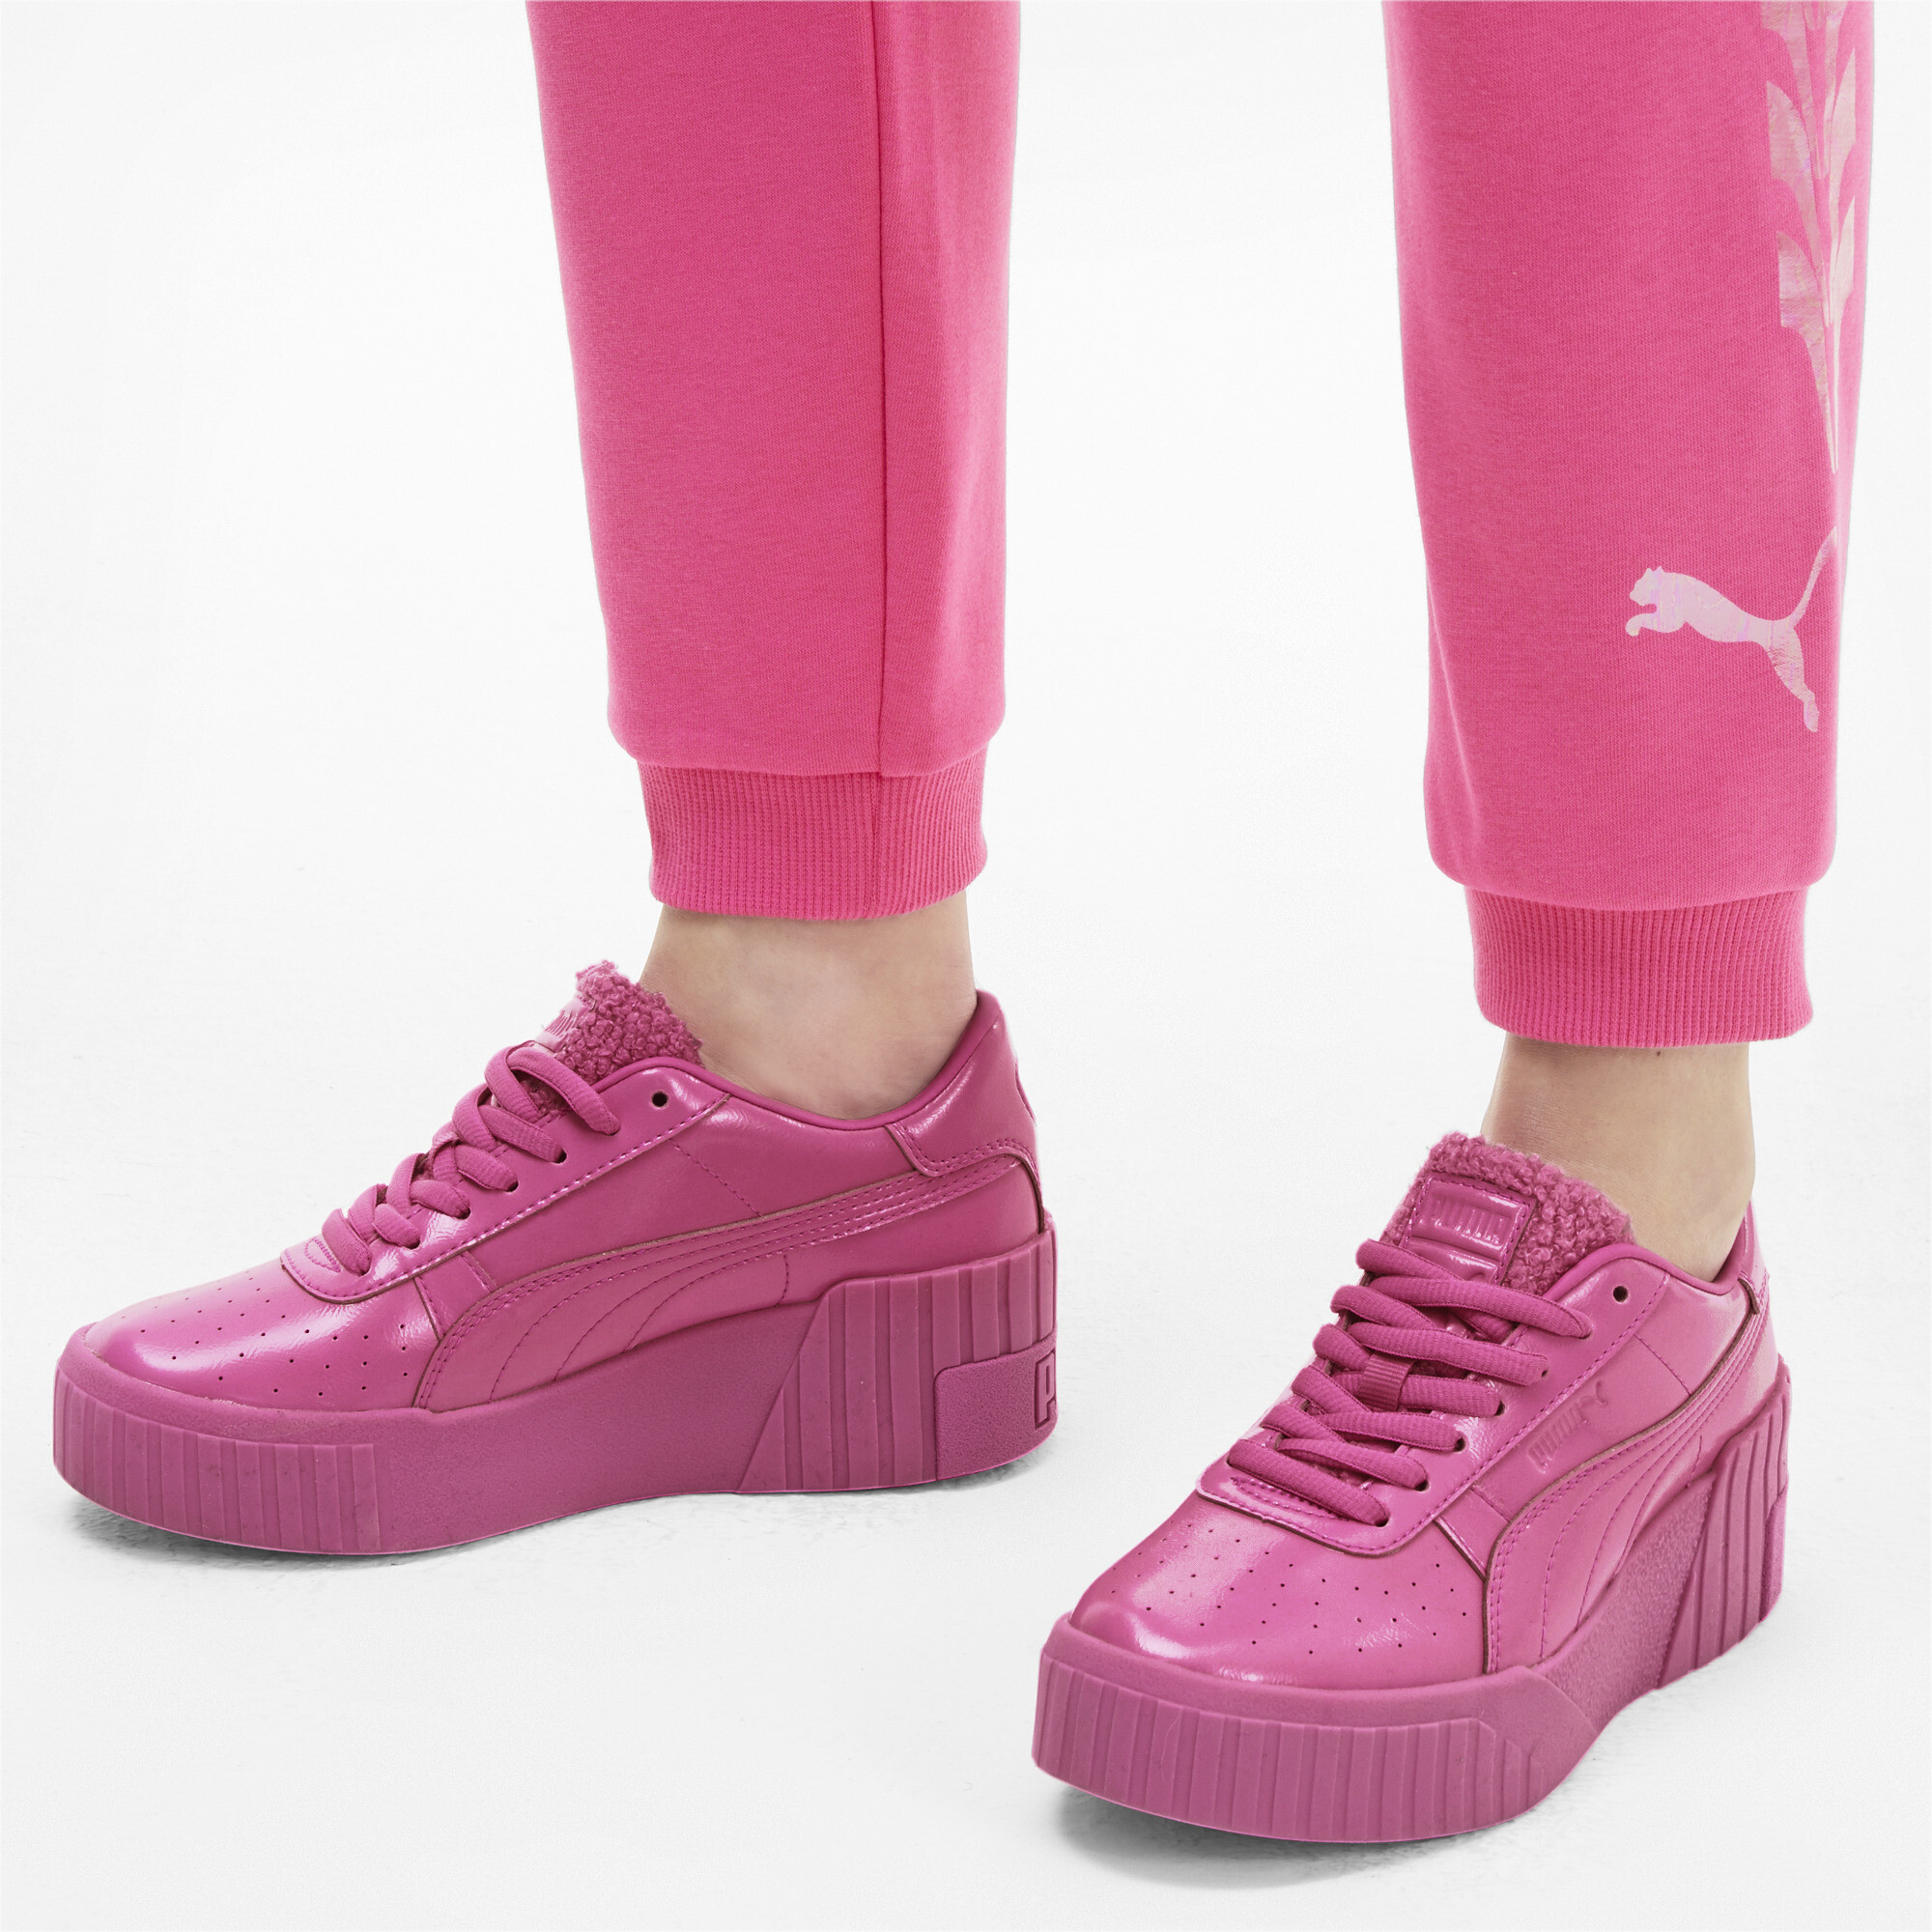 Puma Womens Cali Wedge Pretty Pink Sneakers Ebay